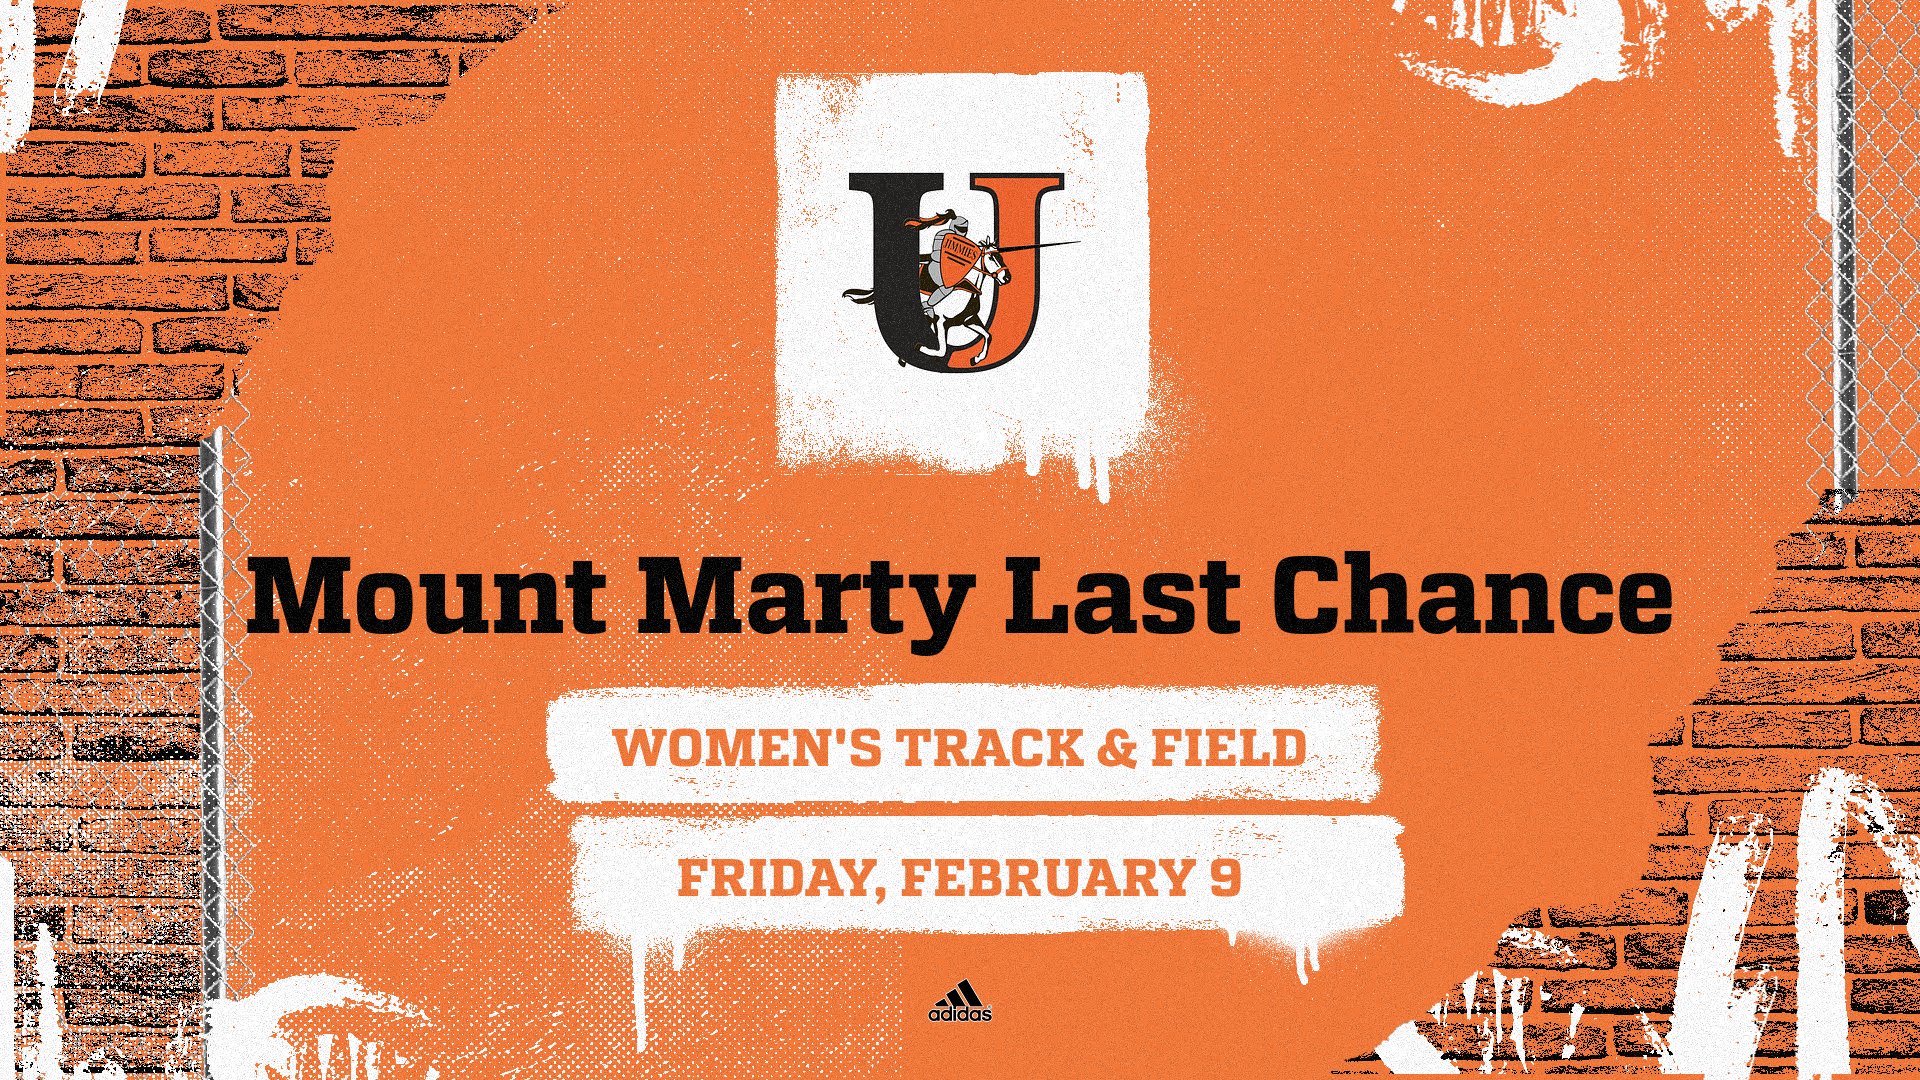 Women's track & field - Mount Marty Last Chance